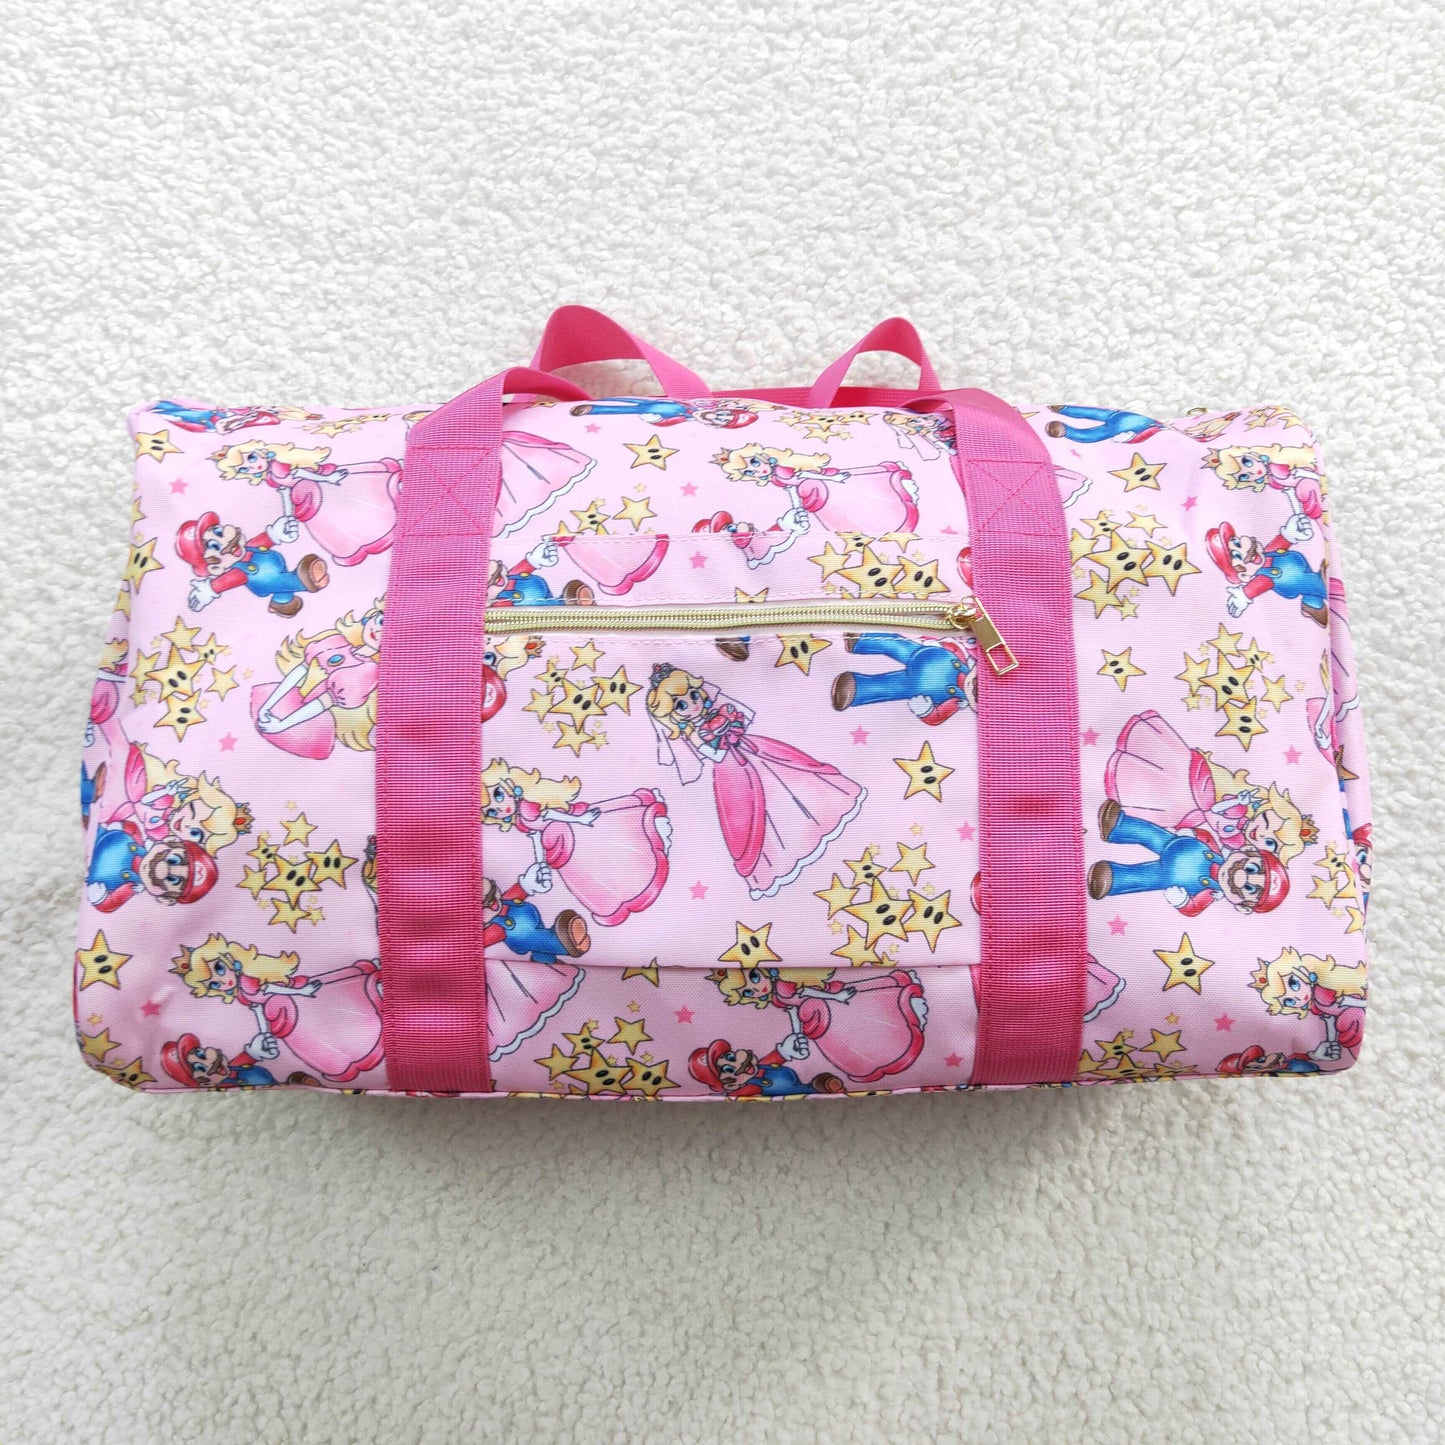 wholesale princess cartoon duffel bag